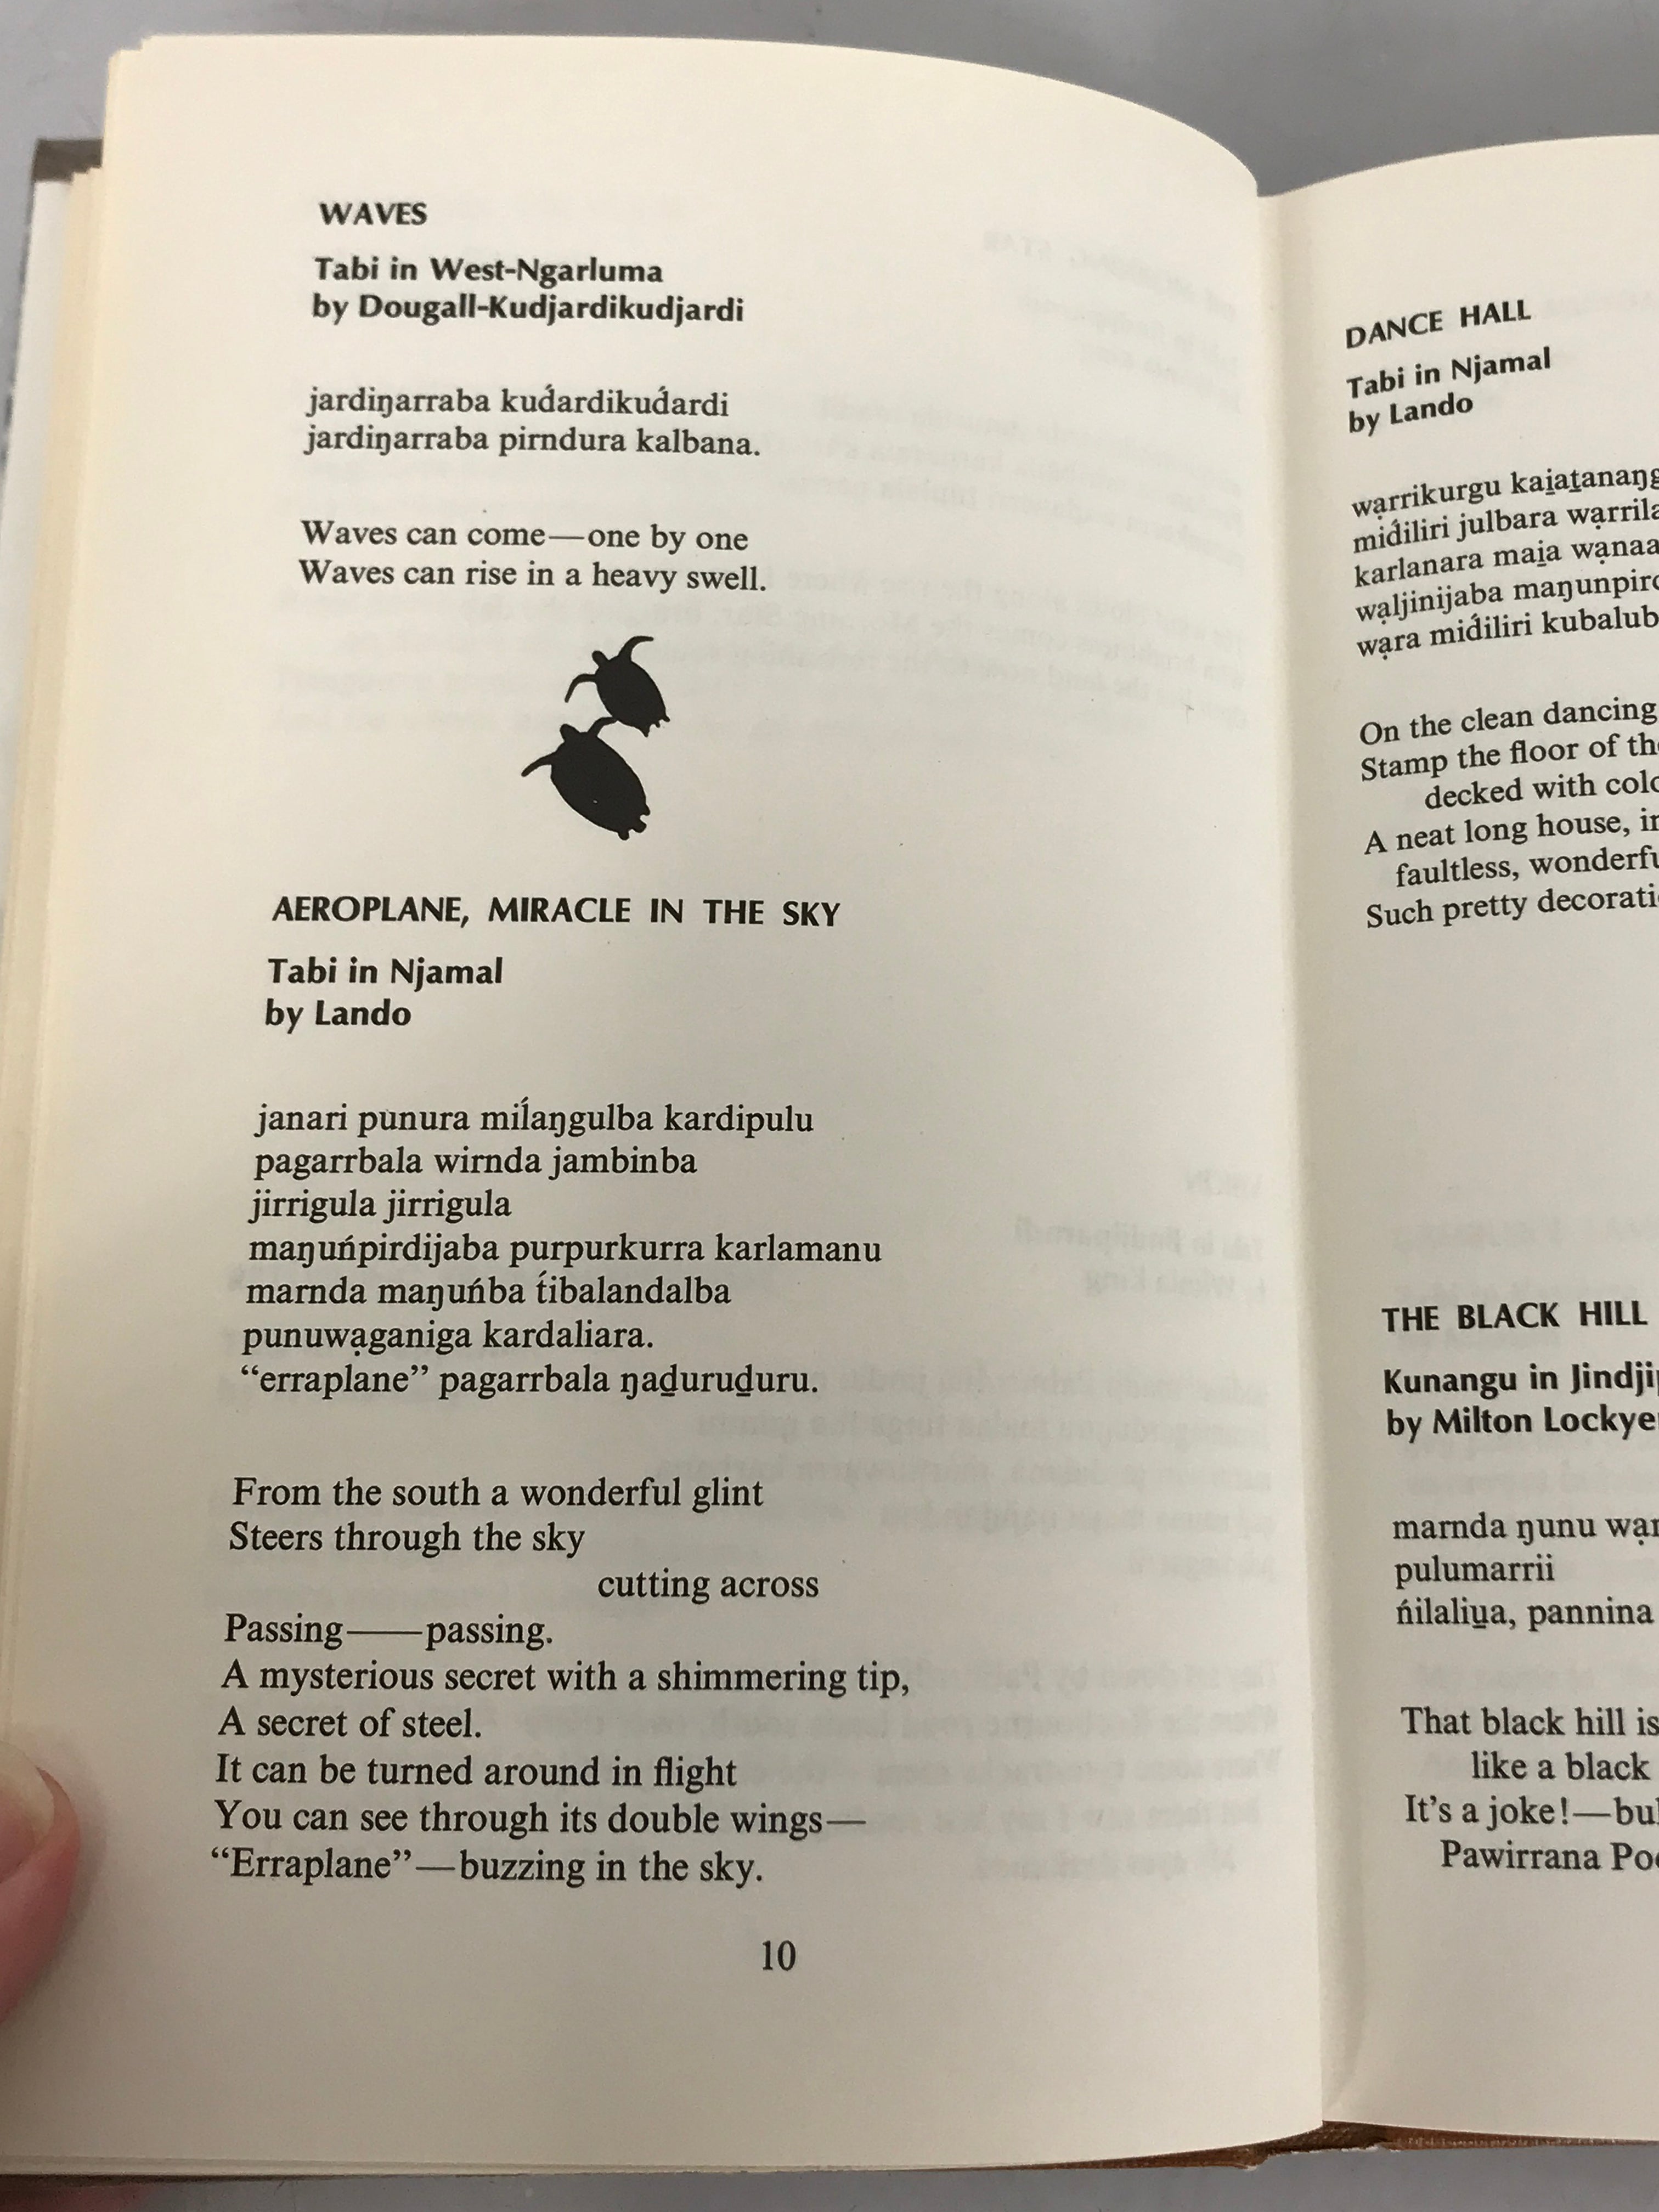 Taruru Aboriginal Song Poetry by von Brandenstein and Thomas 1975 HC DJ